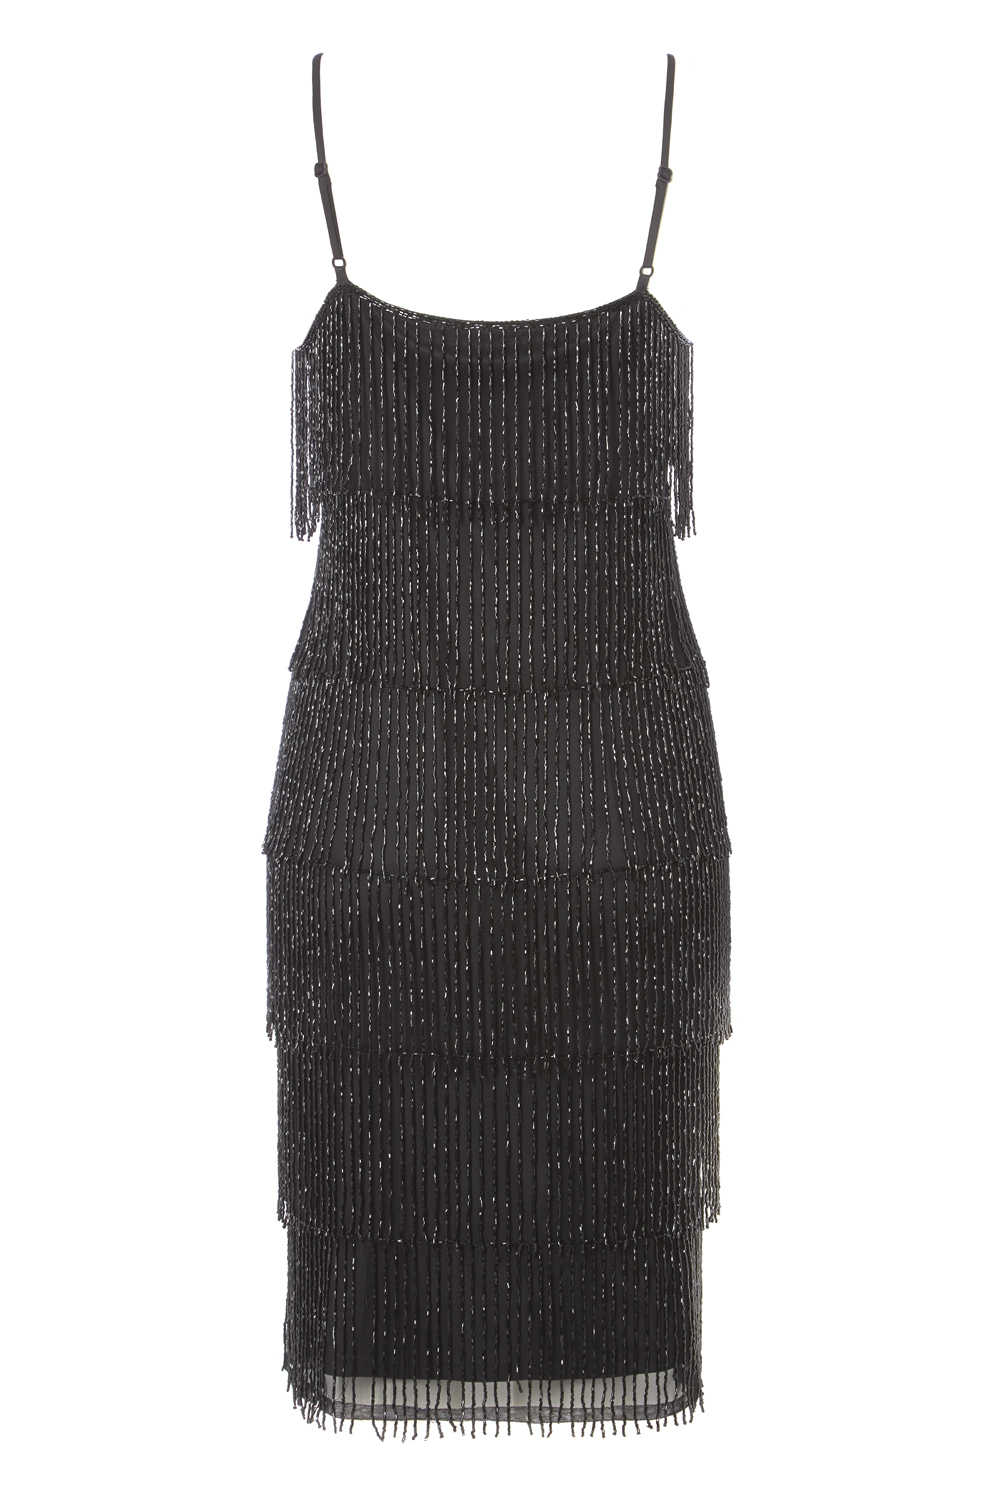 Black Dusk Fringe Beaded Flapper Dress, Image 4 of 5